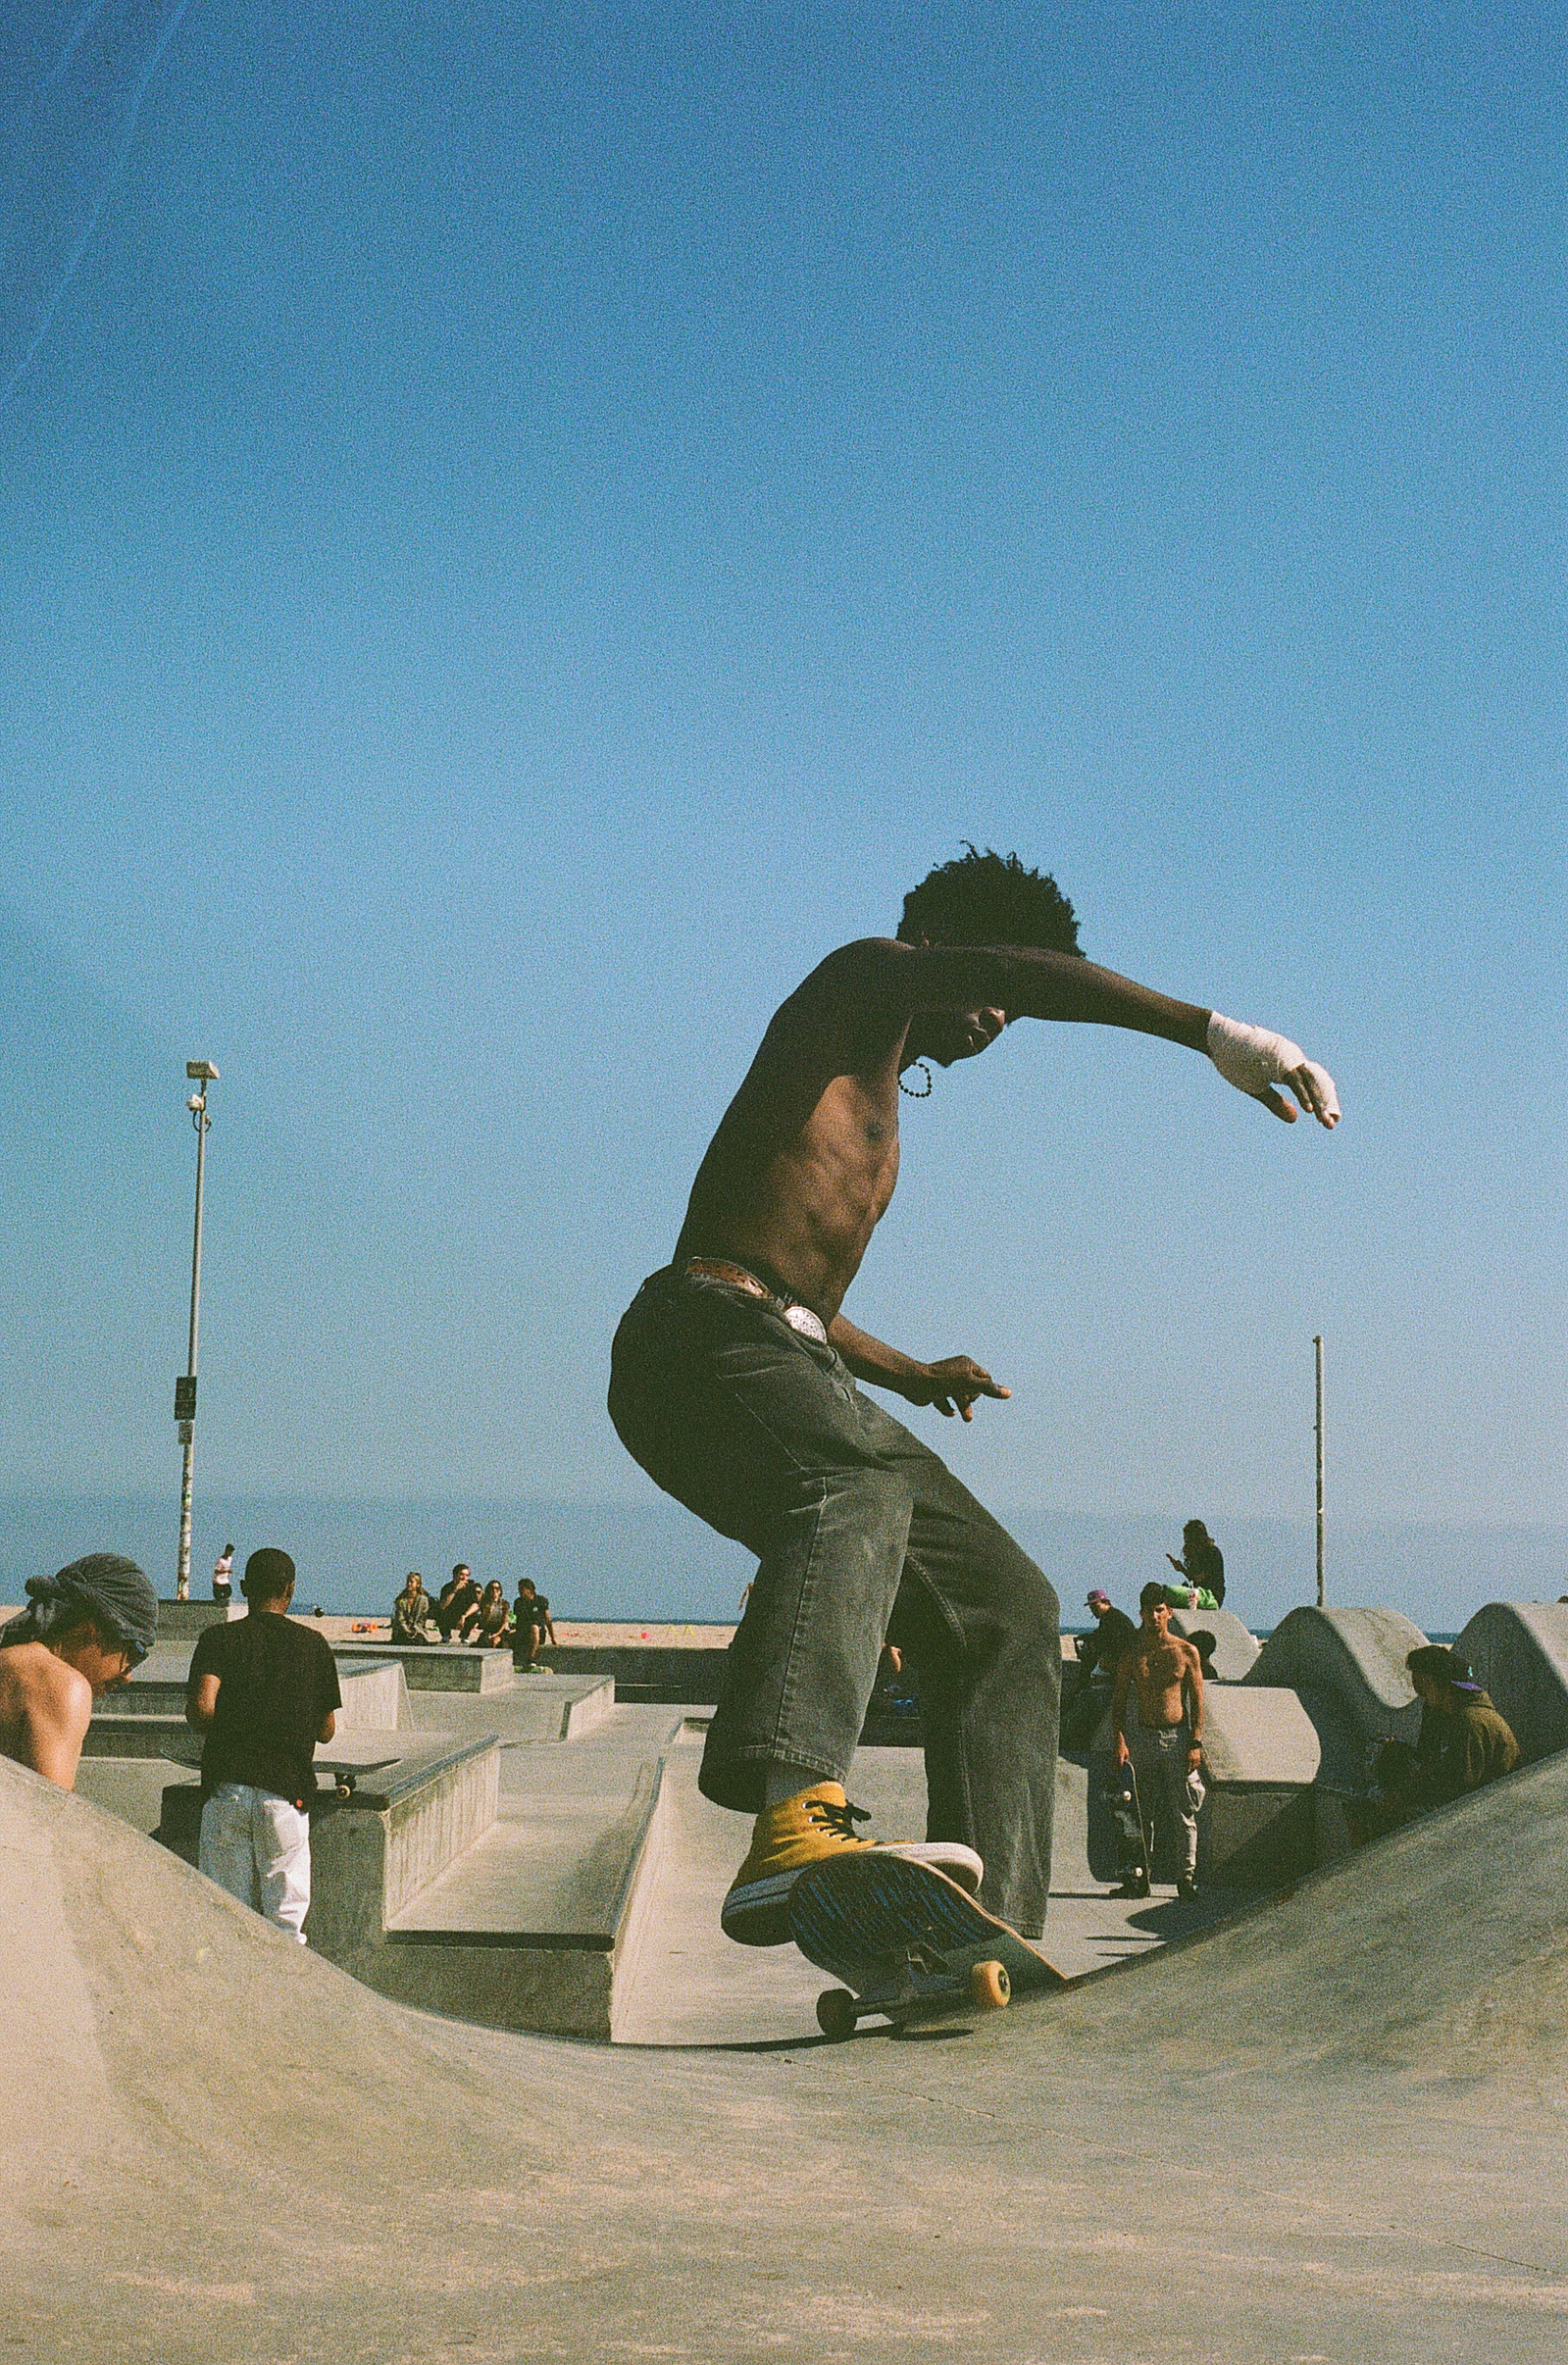 Skateboarding at the skatepark in Venice Beach, California. 